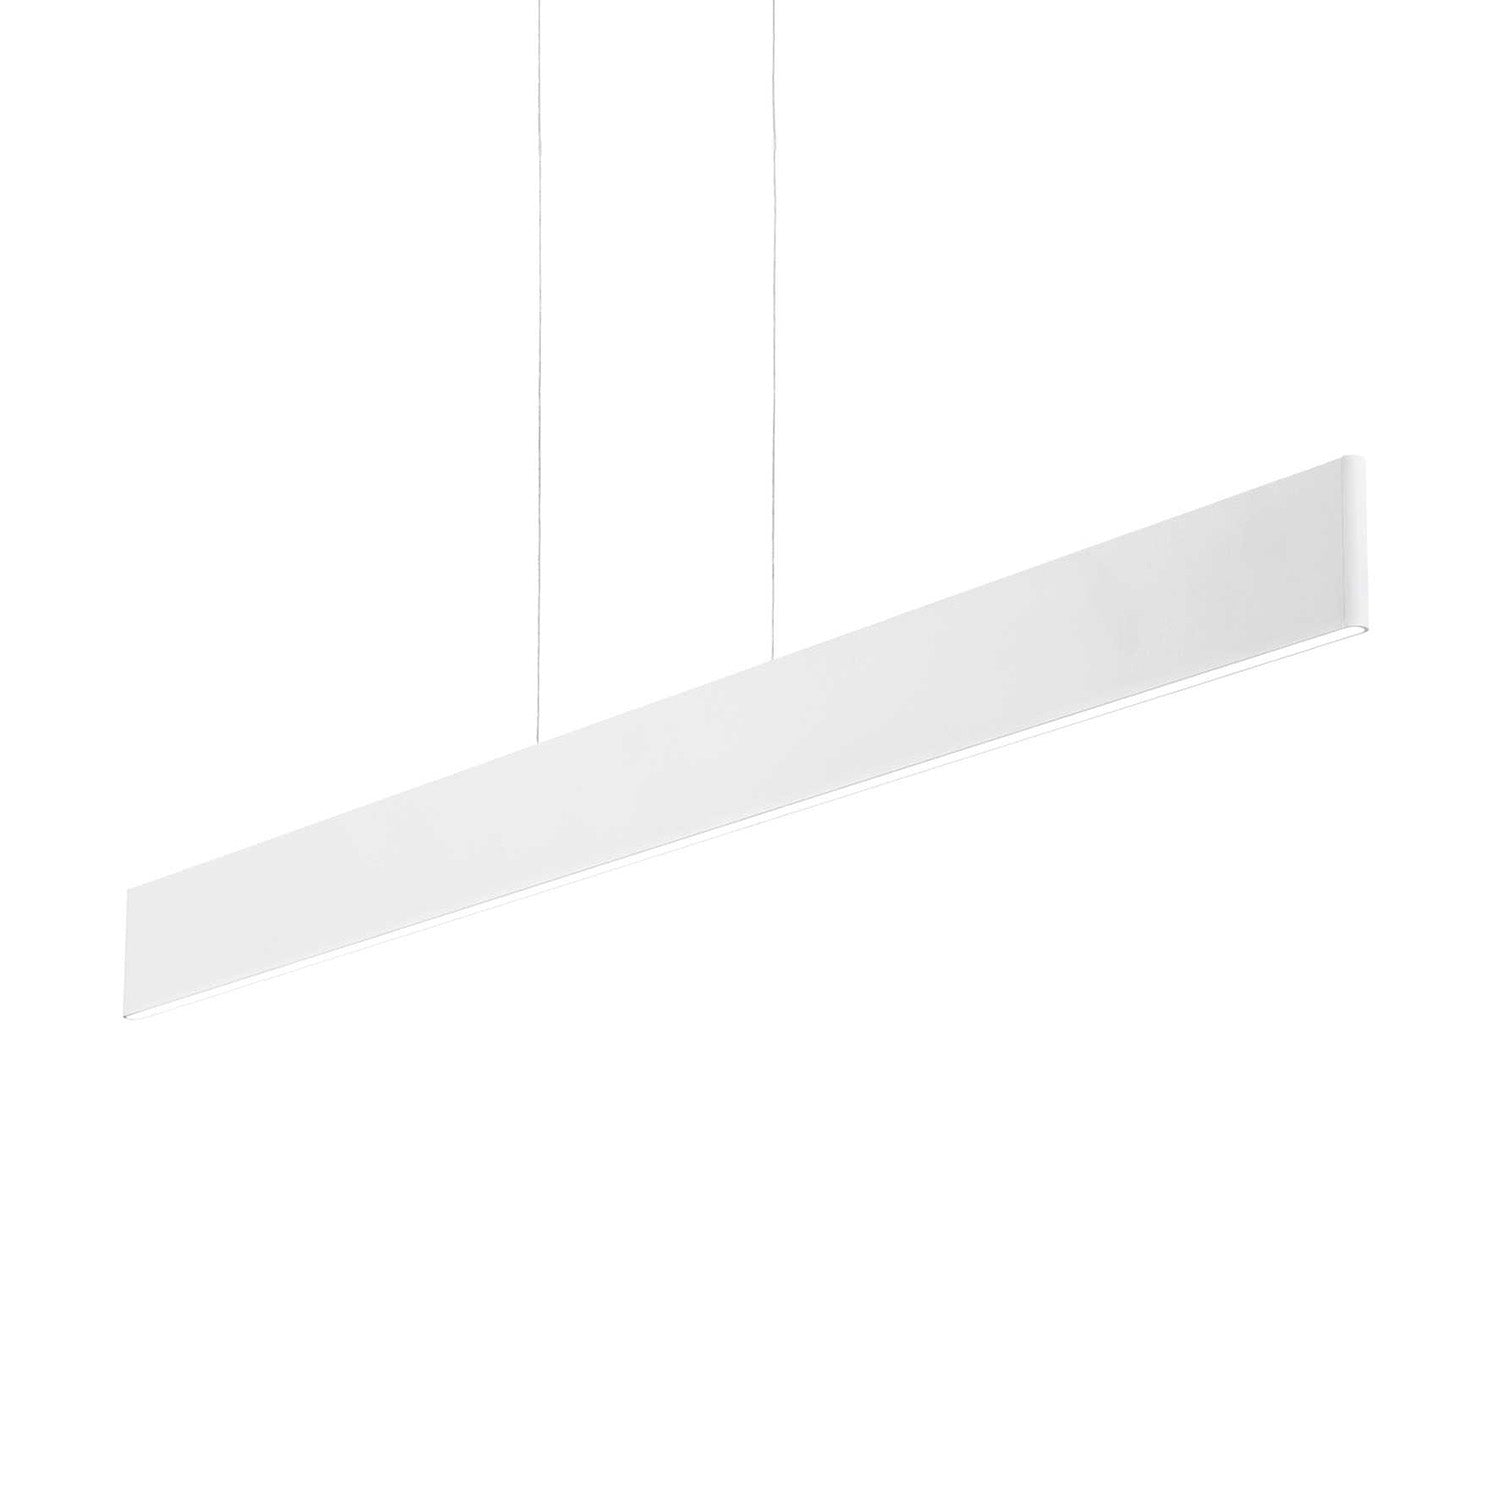 DESK - Black or white linear integrated LED pendant light